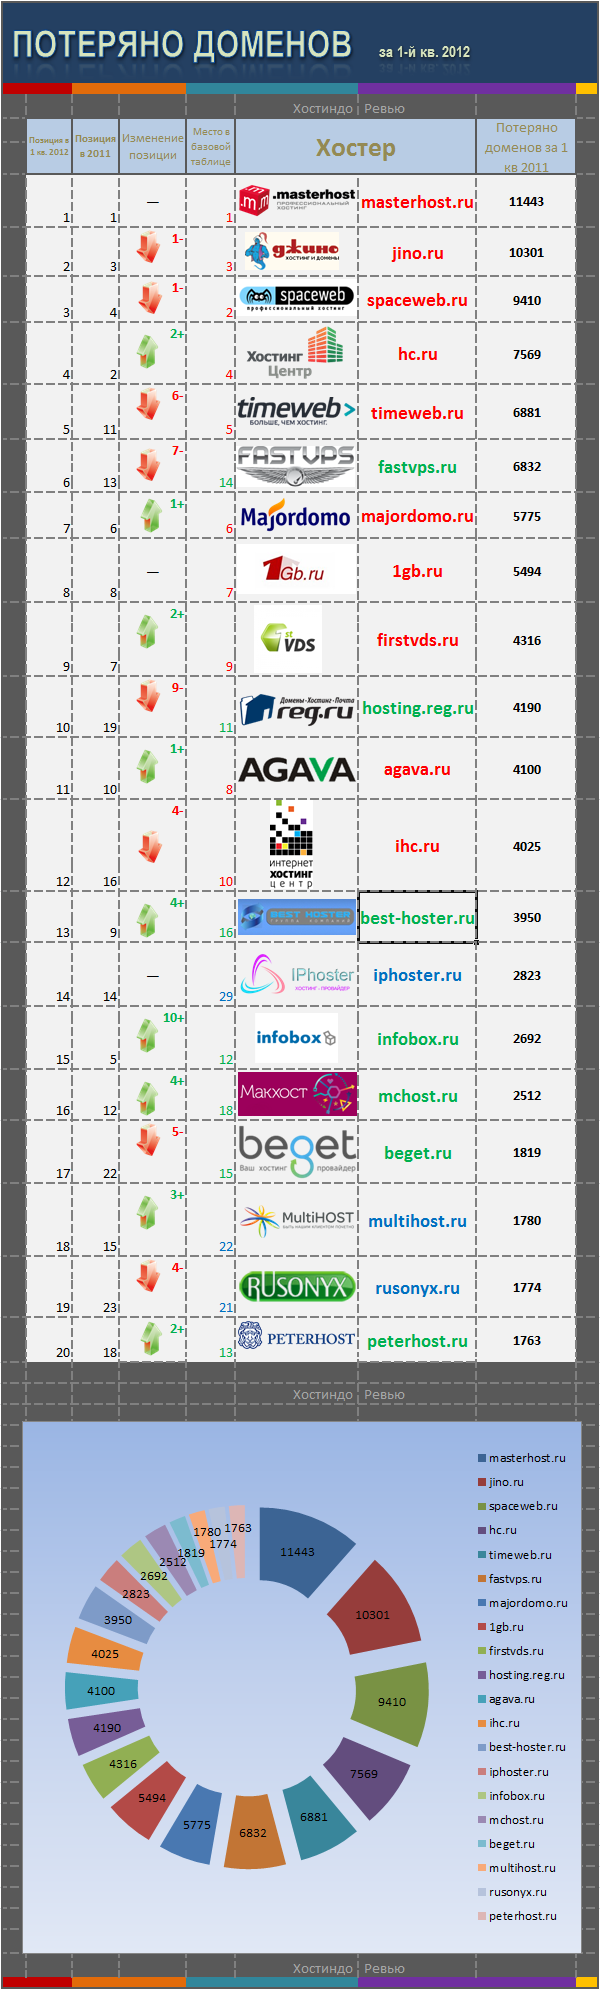 Потеряно доменов в 1-м квартале 2012